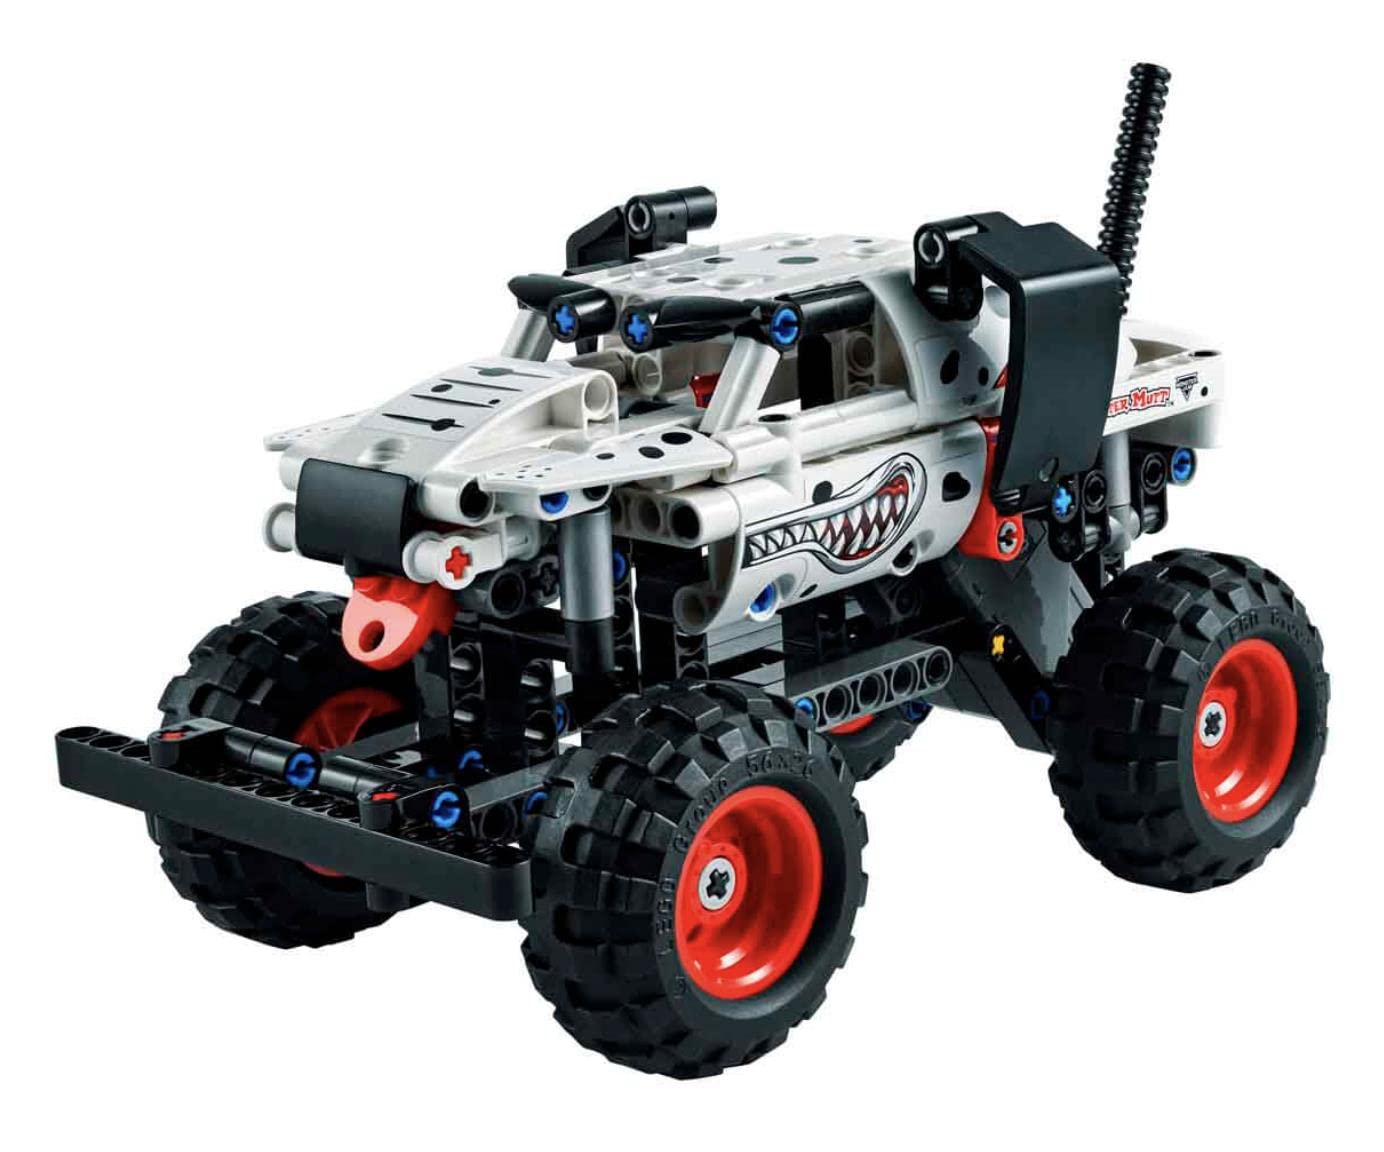 LEGO Technic - Monster Jam Monster Mutt Dalmatian 42150